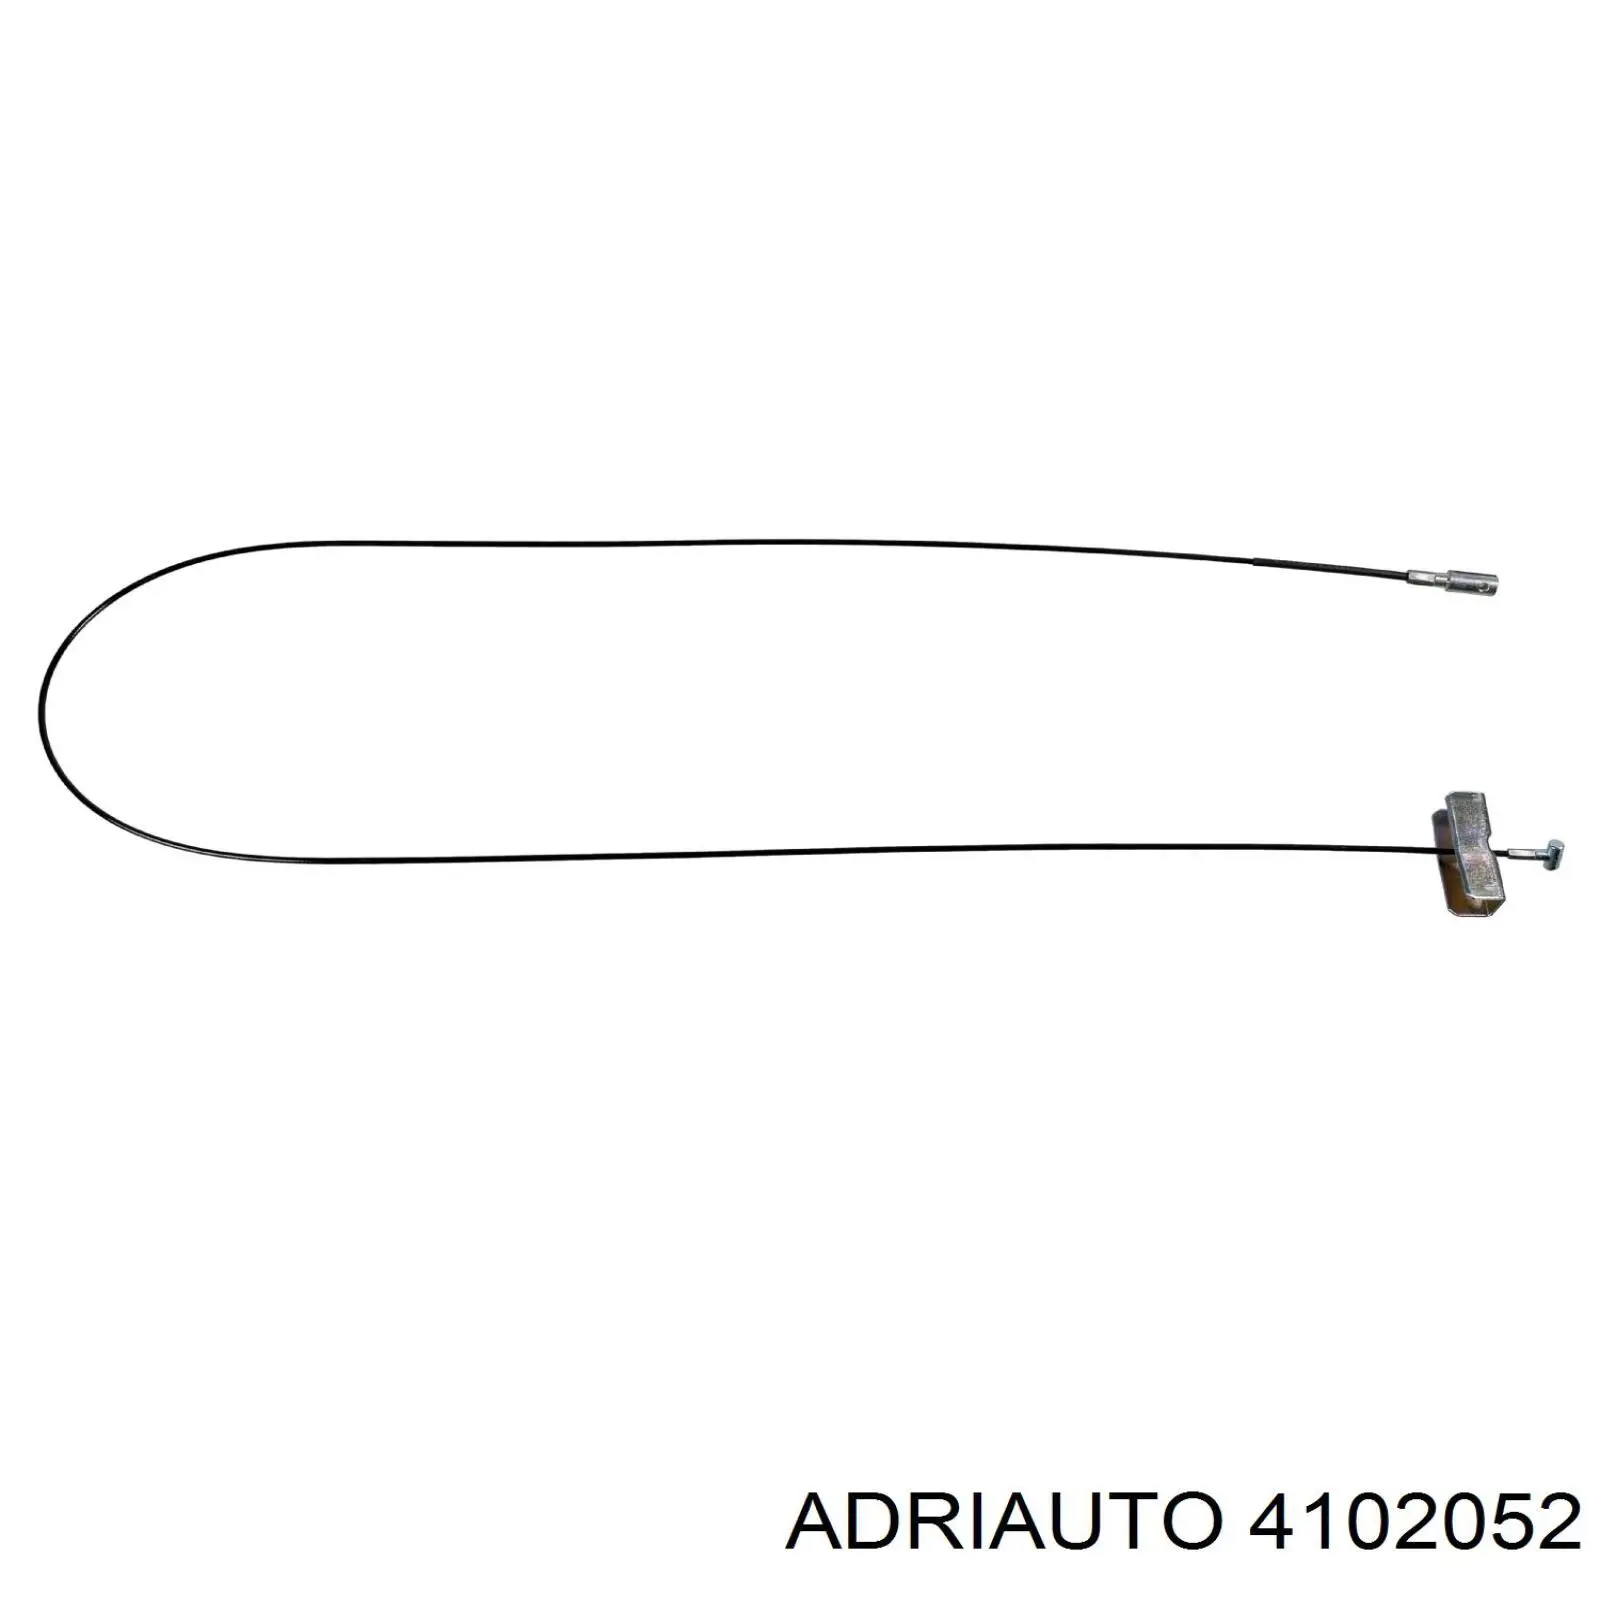 4102052 Adriauto cable de freno de mano intermedio